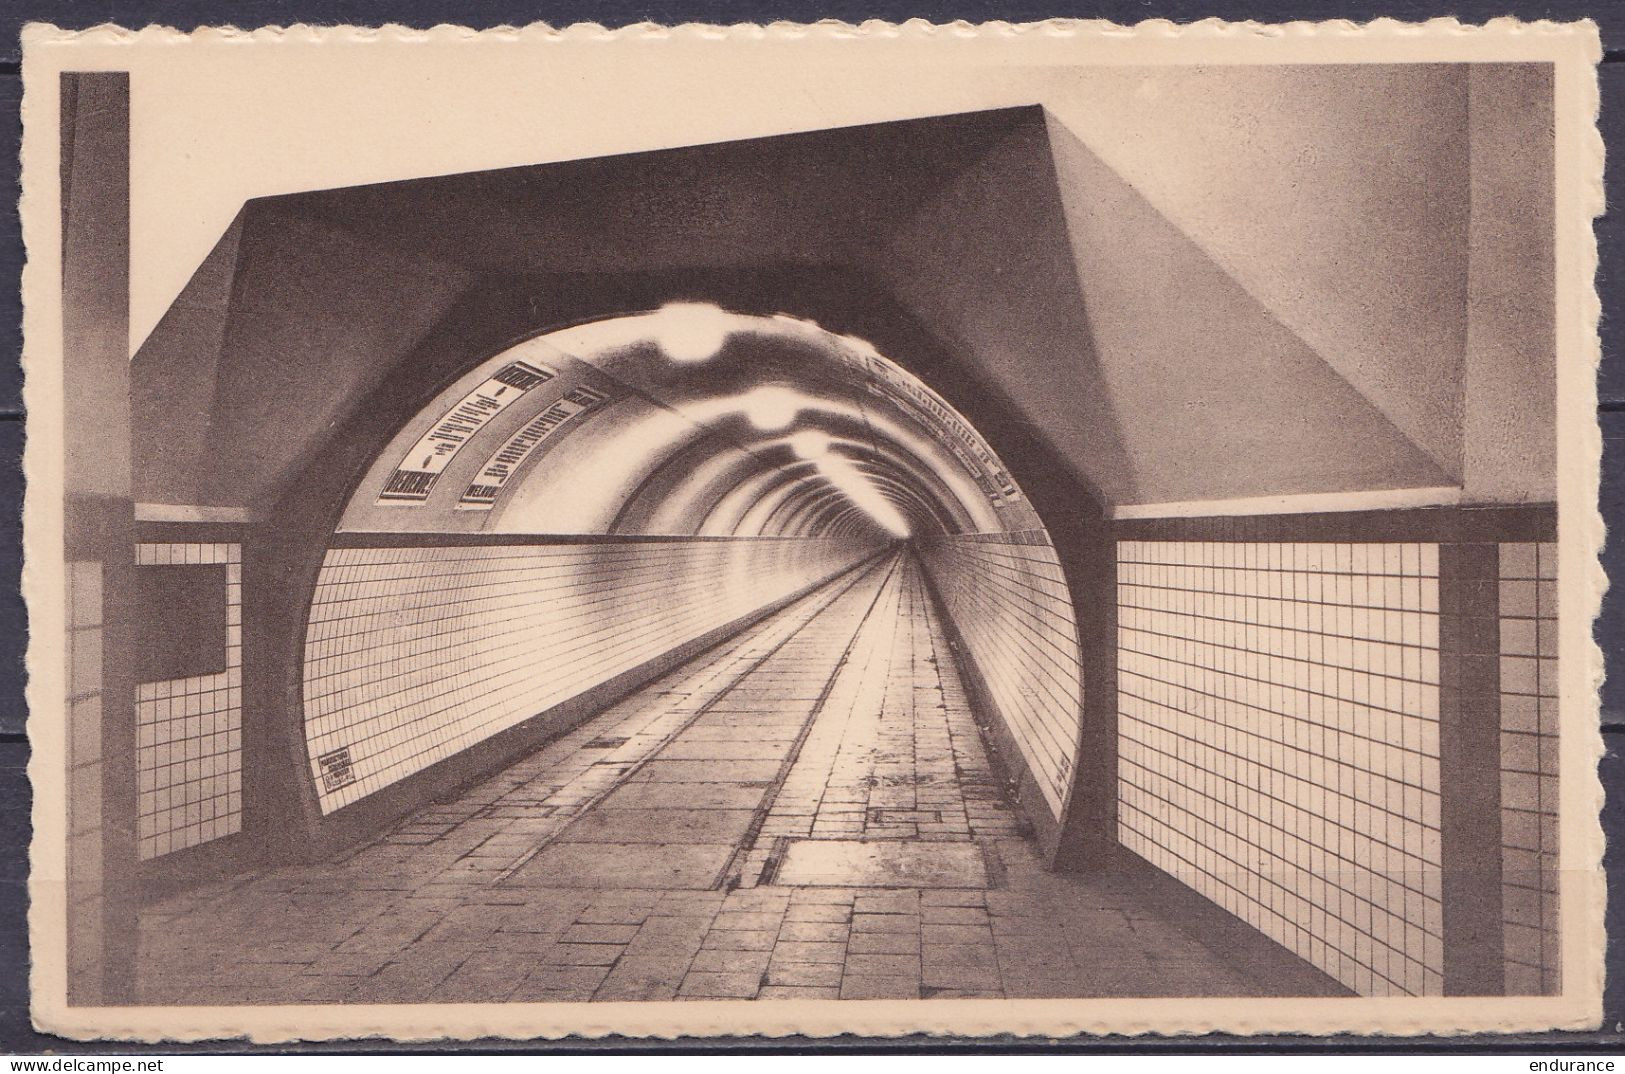 Anvers - Tunnel Pour Piétons Sous L'Escaut - CPSM Neuve - Antwerpen